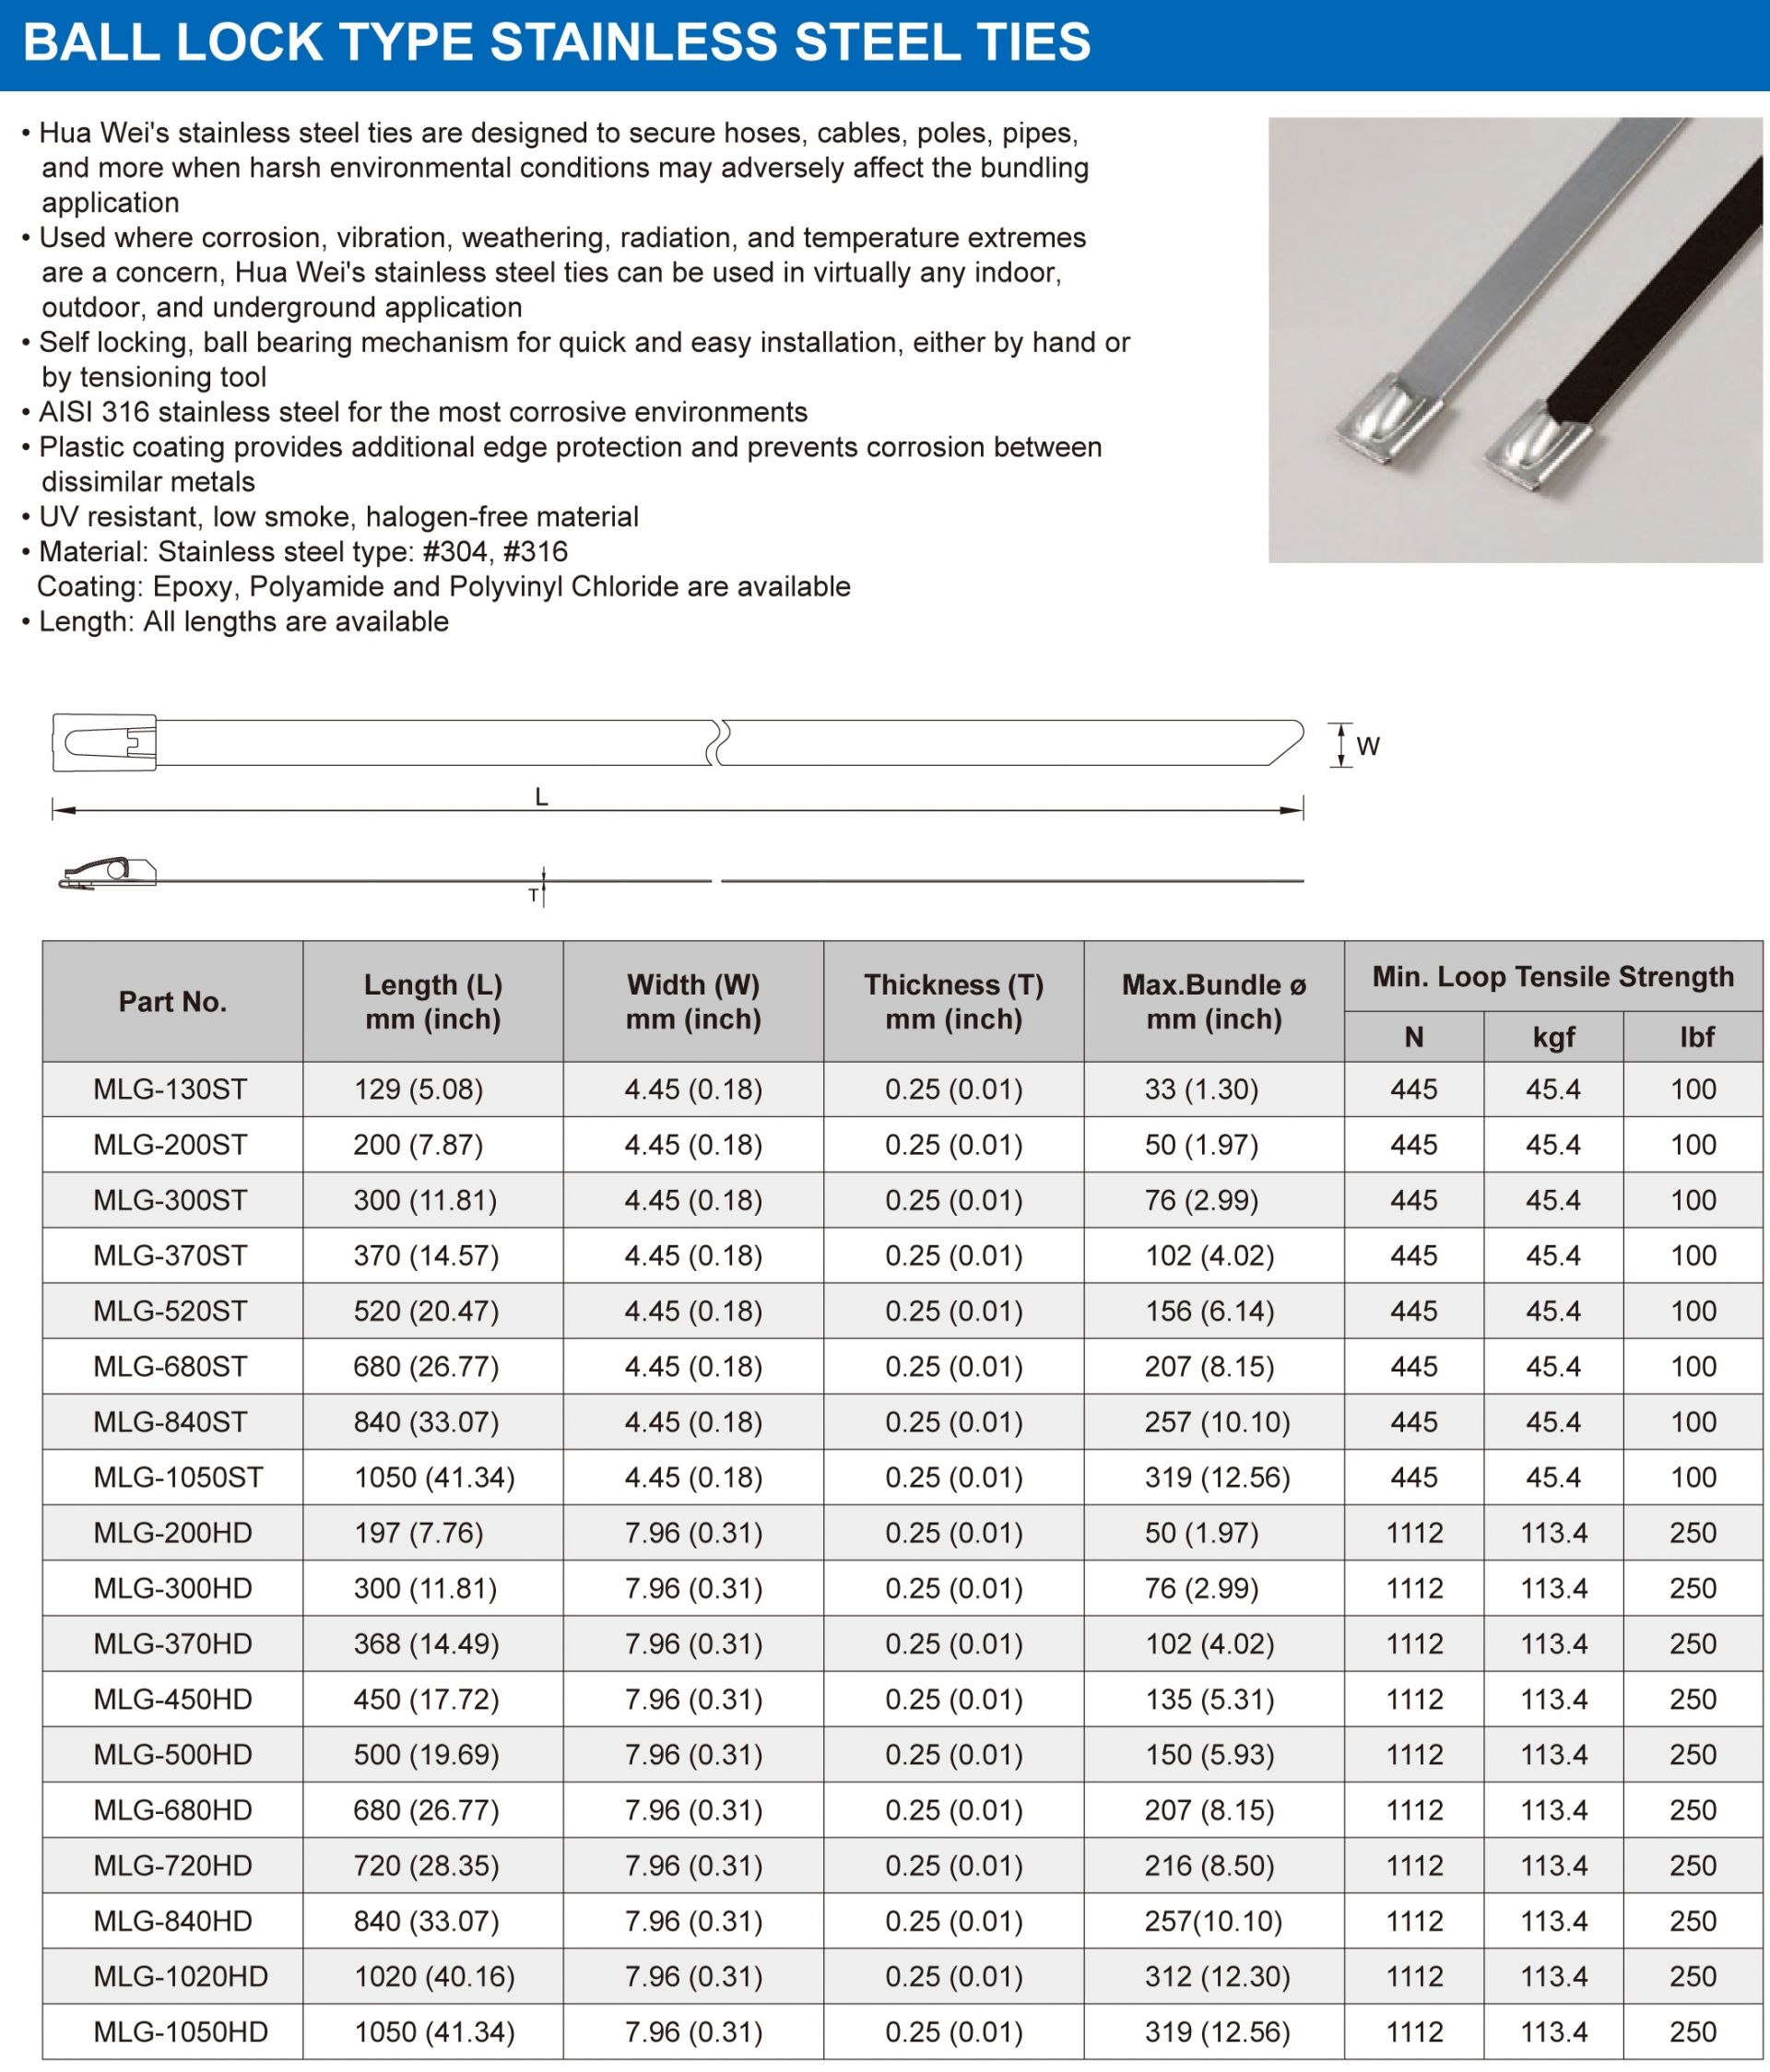 Спецификация - Шариковые стальные хомуты типа Ball Lock